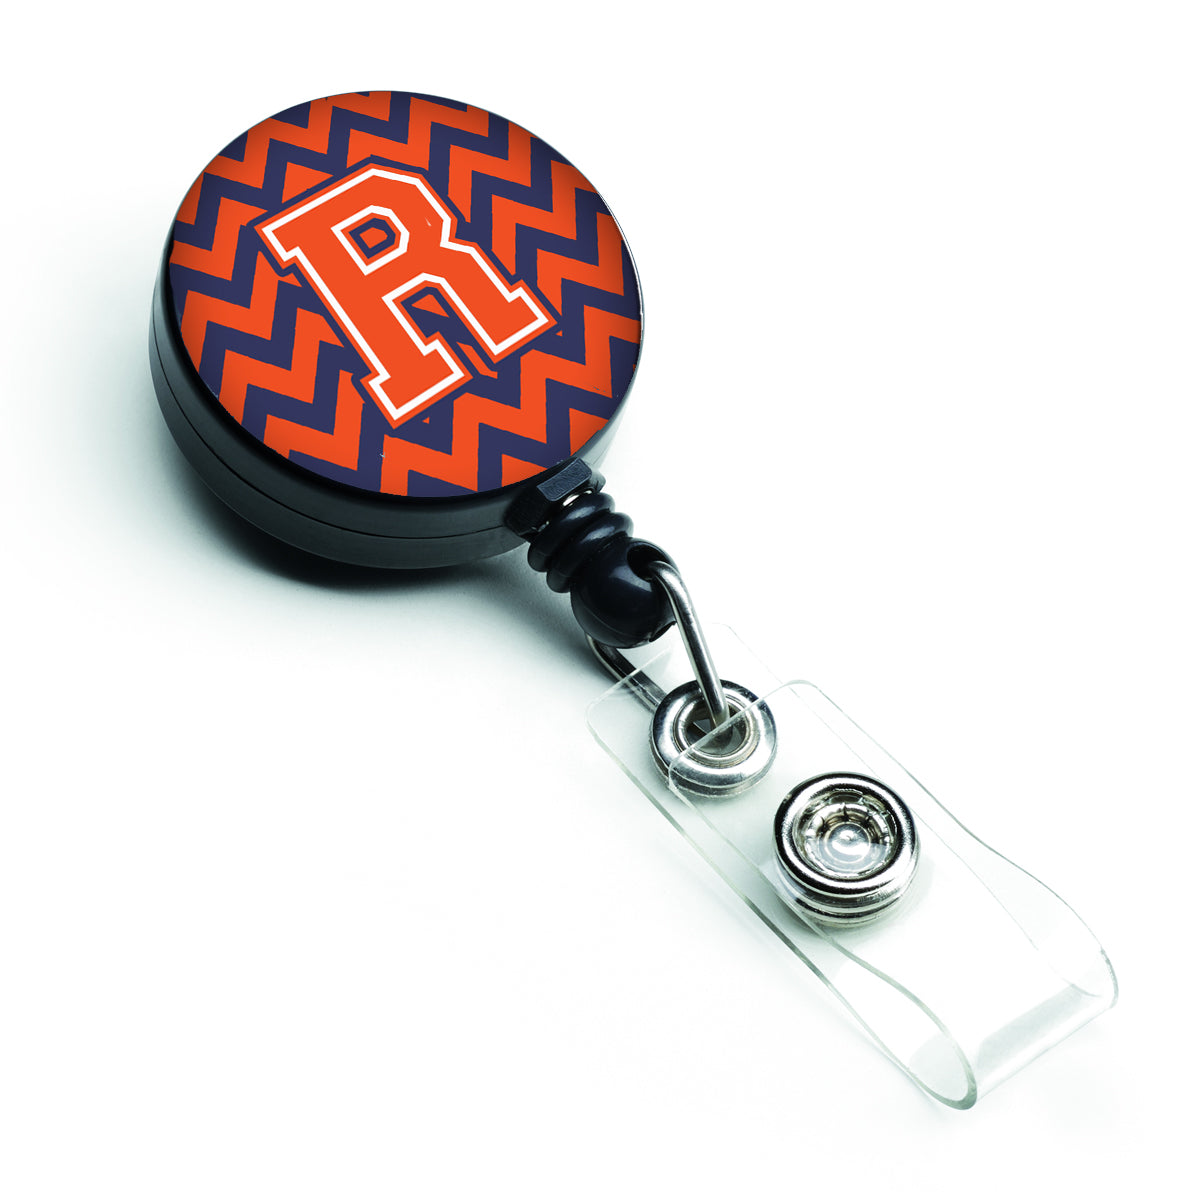 Bobine de badge rétractable Lettre R Chevron Orange et Bleu CJ1042-RBR